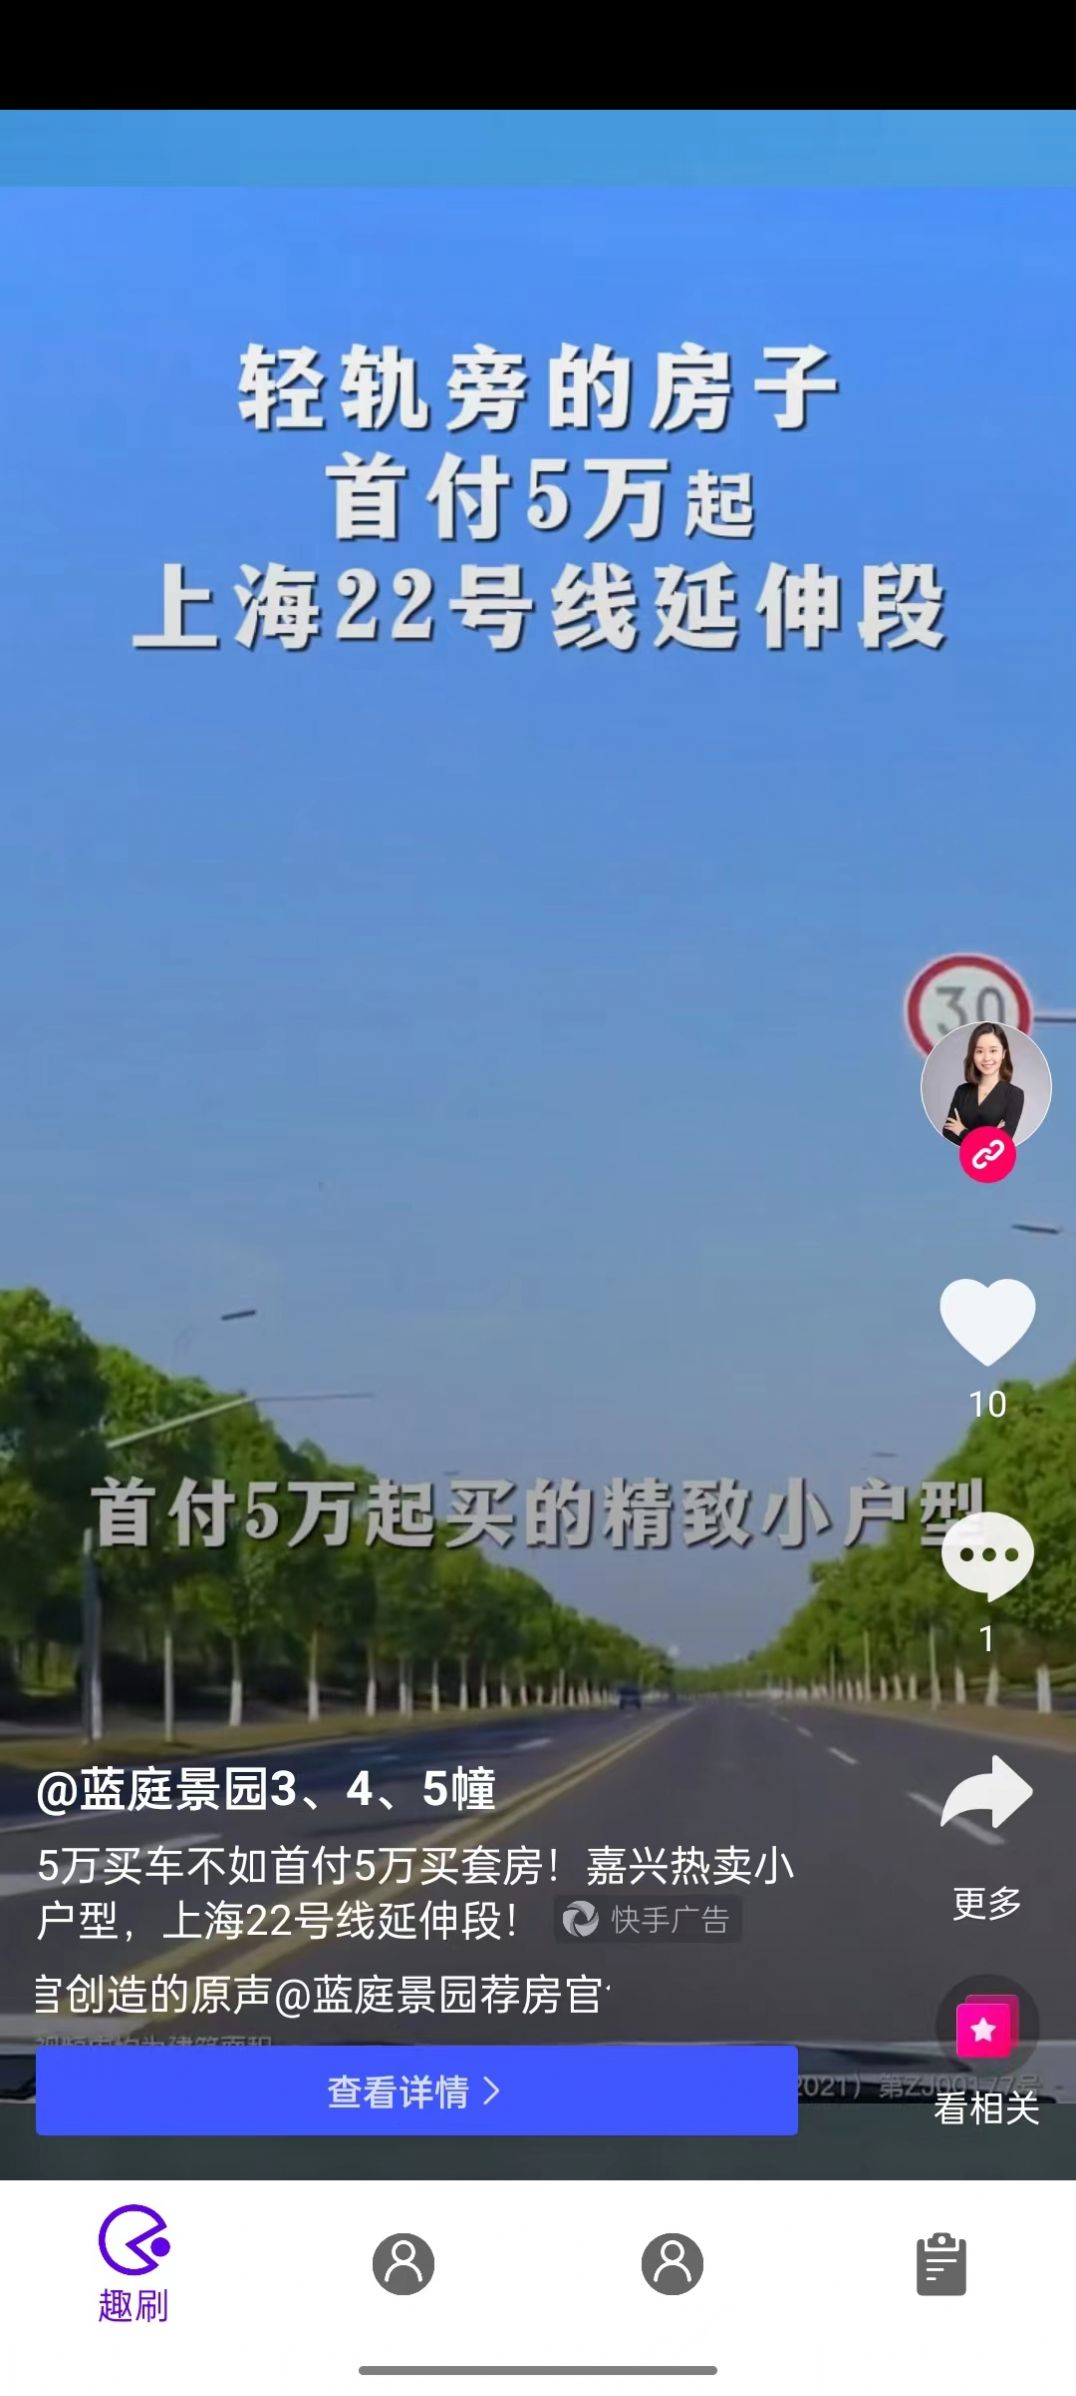 义礼班历短视频app官方图片1